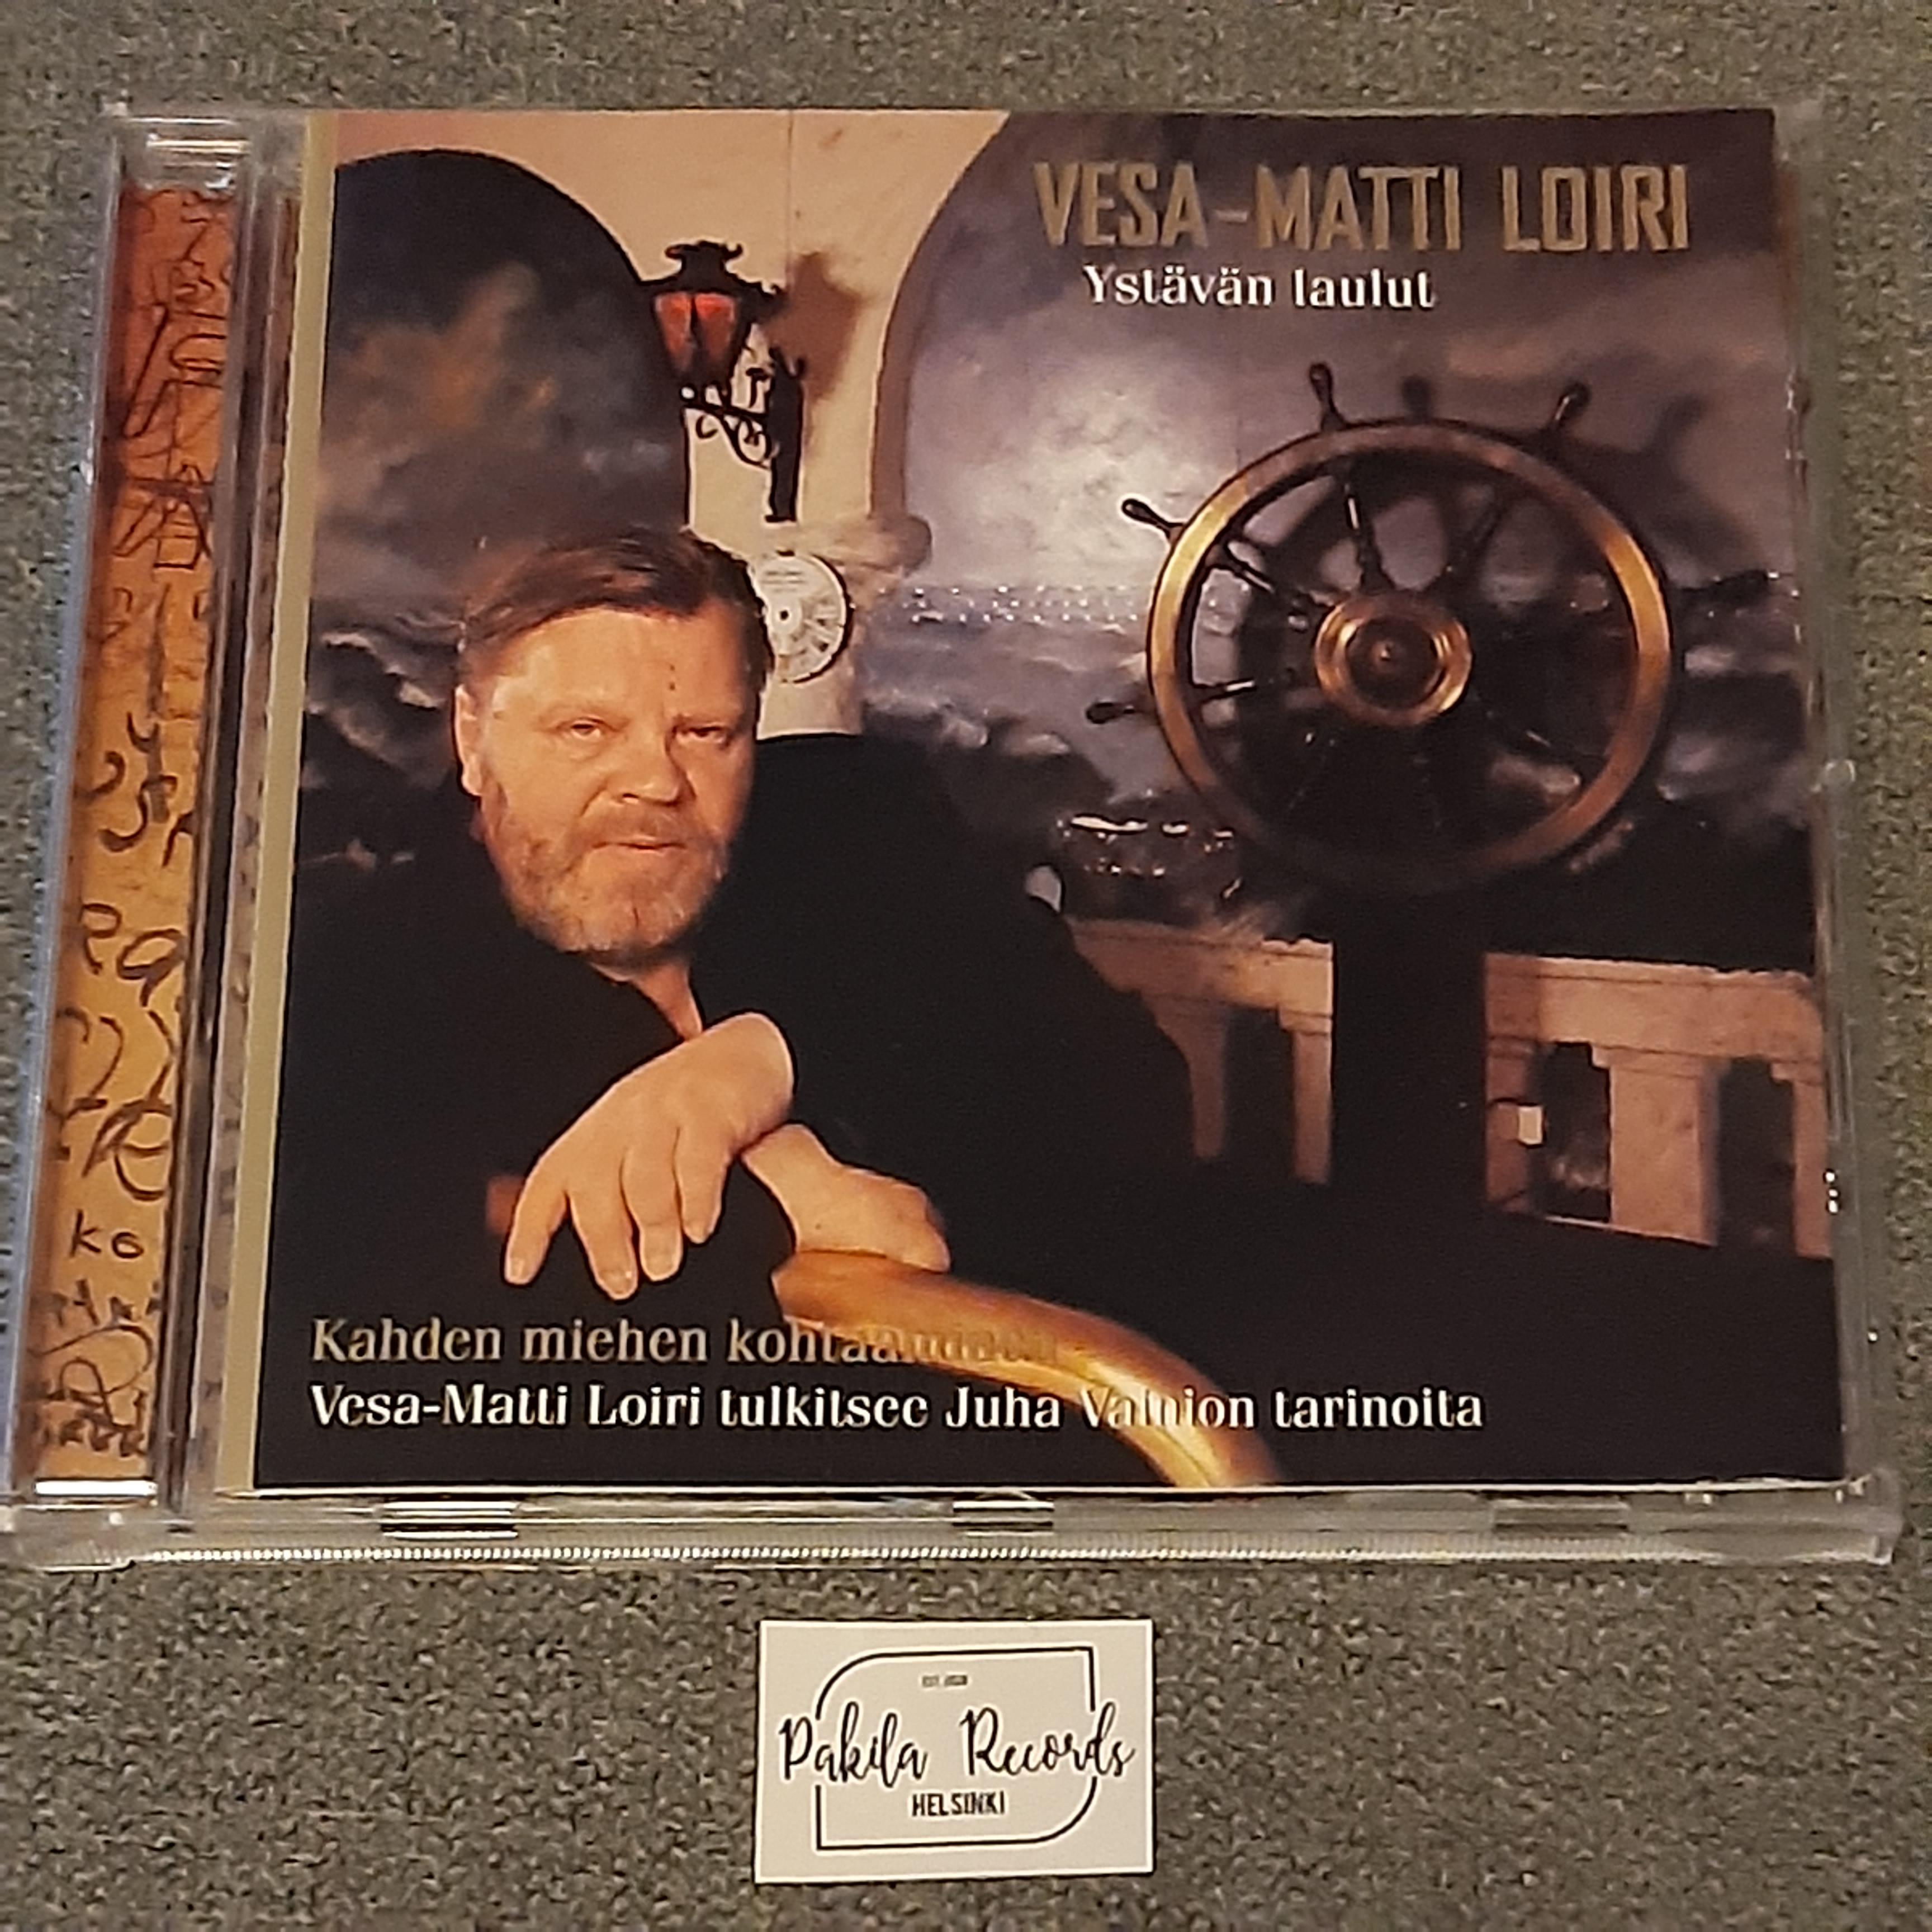 Vesa-Matti Loiri - Ystävän laulut - CD (käytetty)